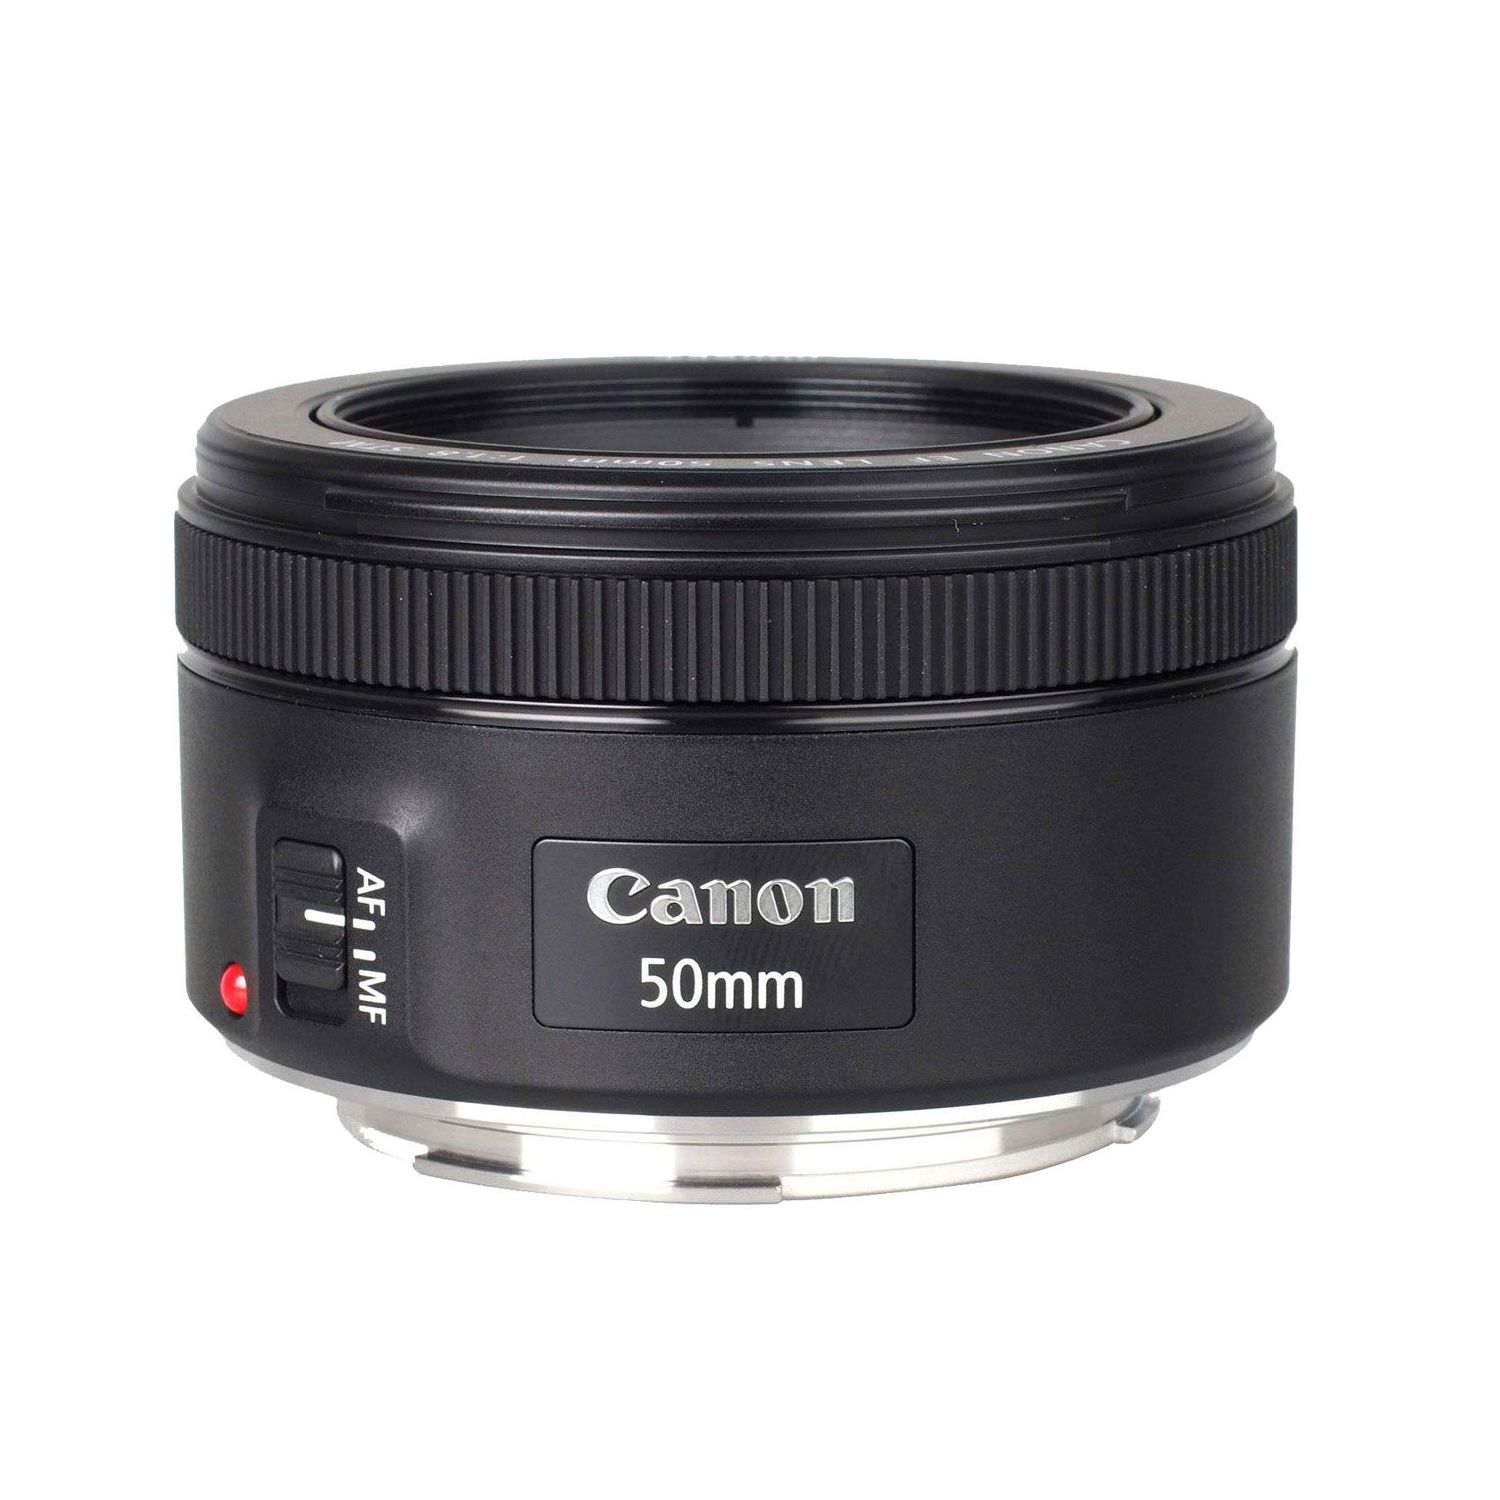 Sanders Voorstad Reis Canon 50MM 1.8 STM – Photostar